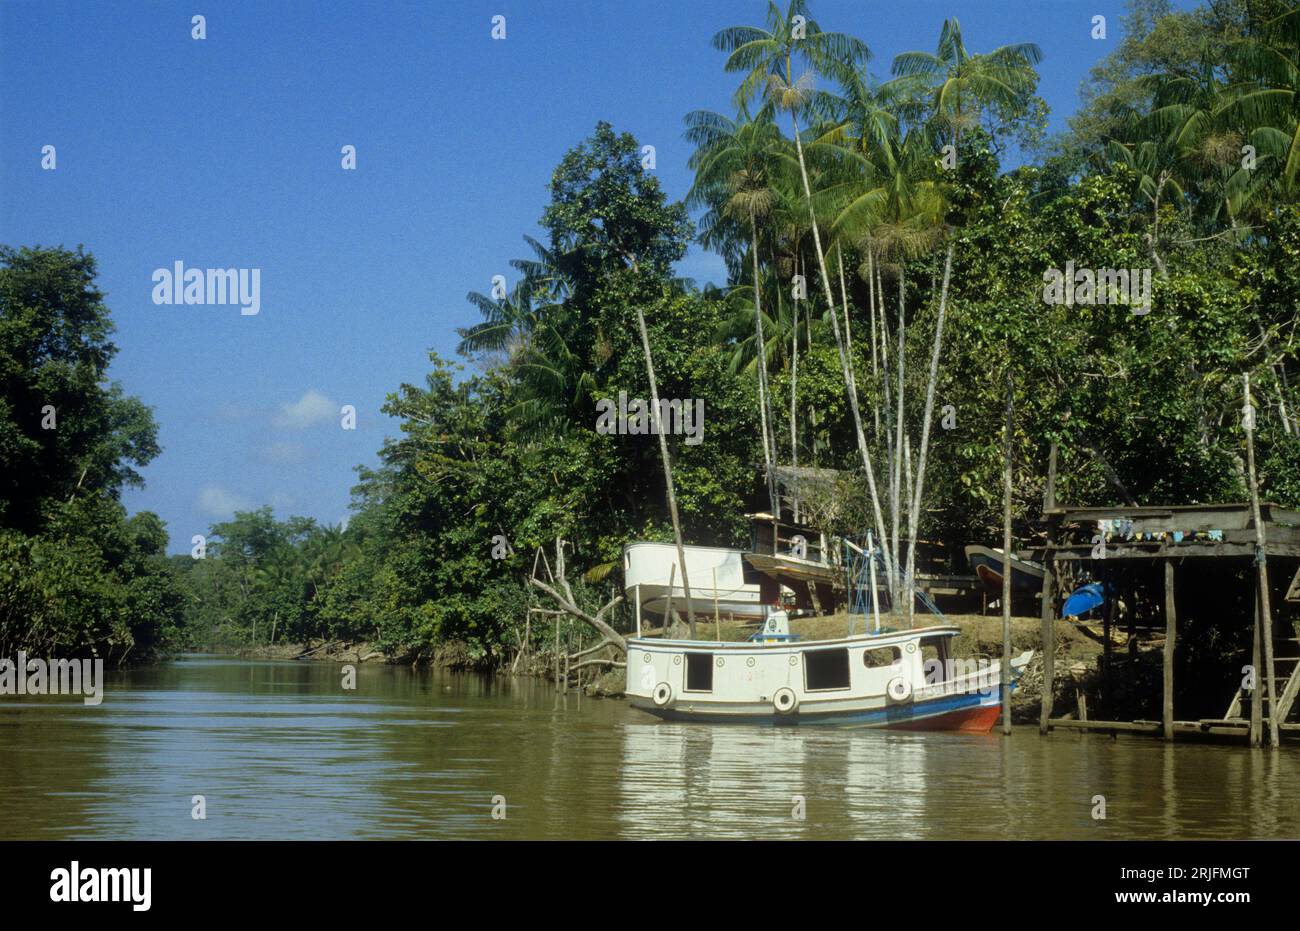 Brésil, région amazonienne, État du Para. Rio Guama, avec bateau et trois bateaux sur terre. Le palmier est assai (açai), Euterpe oleracea. Banque D'Images